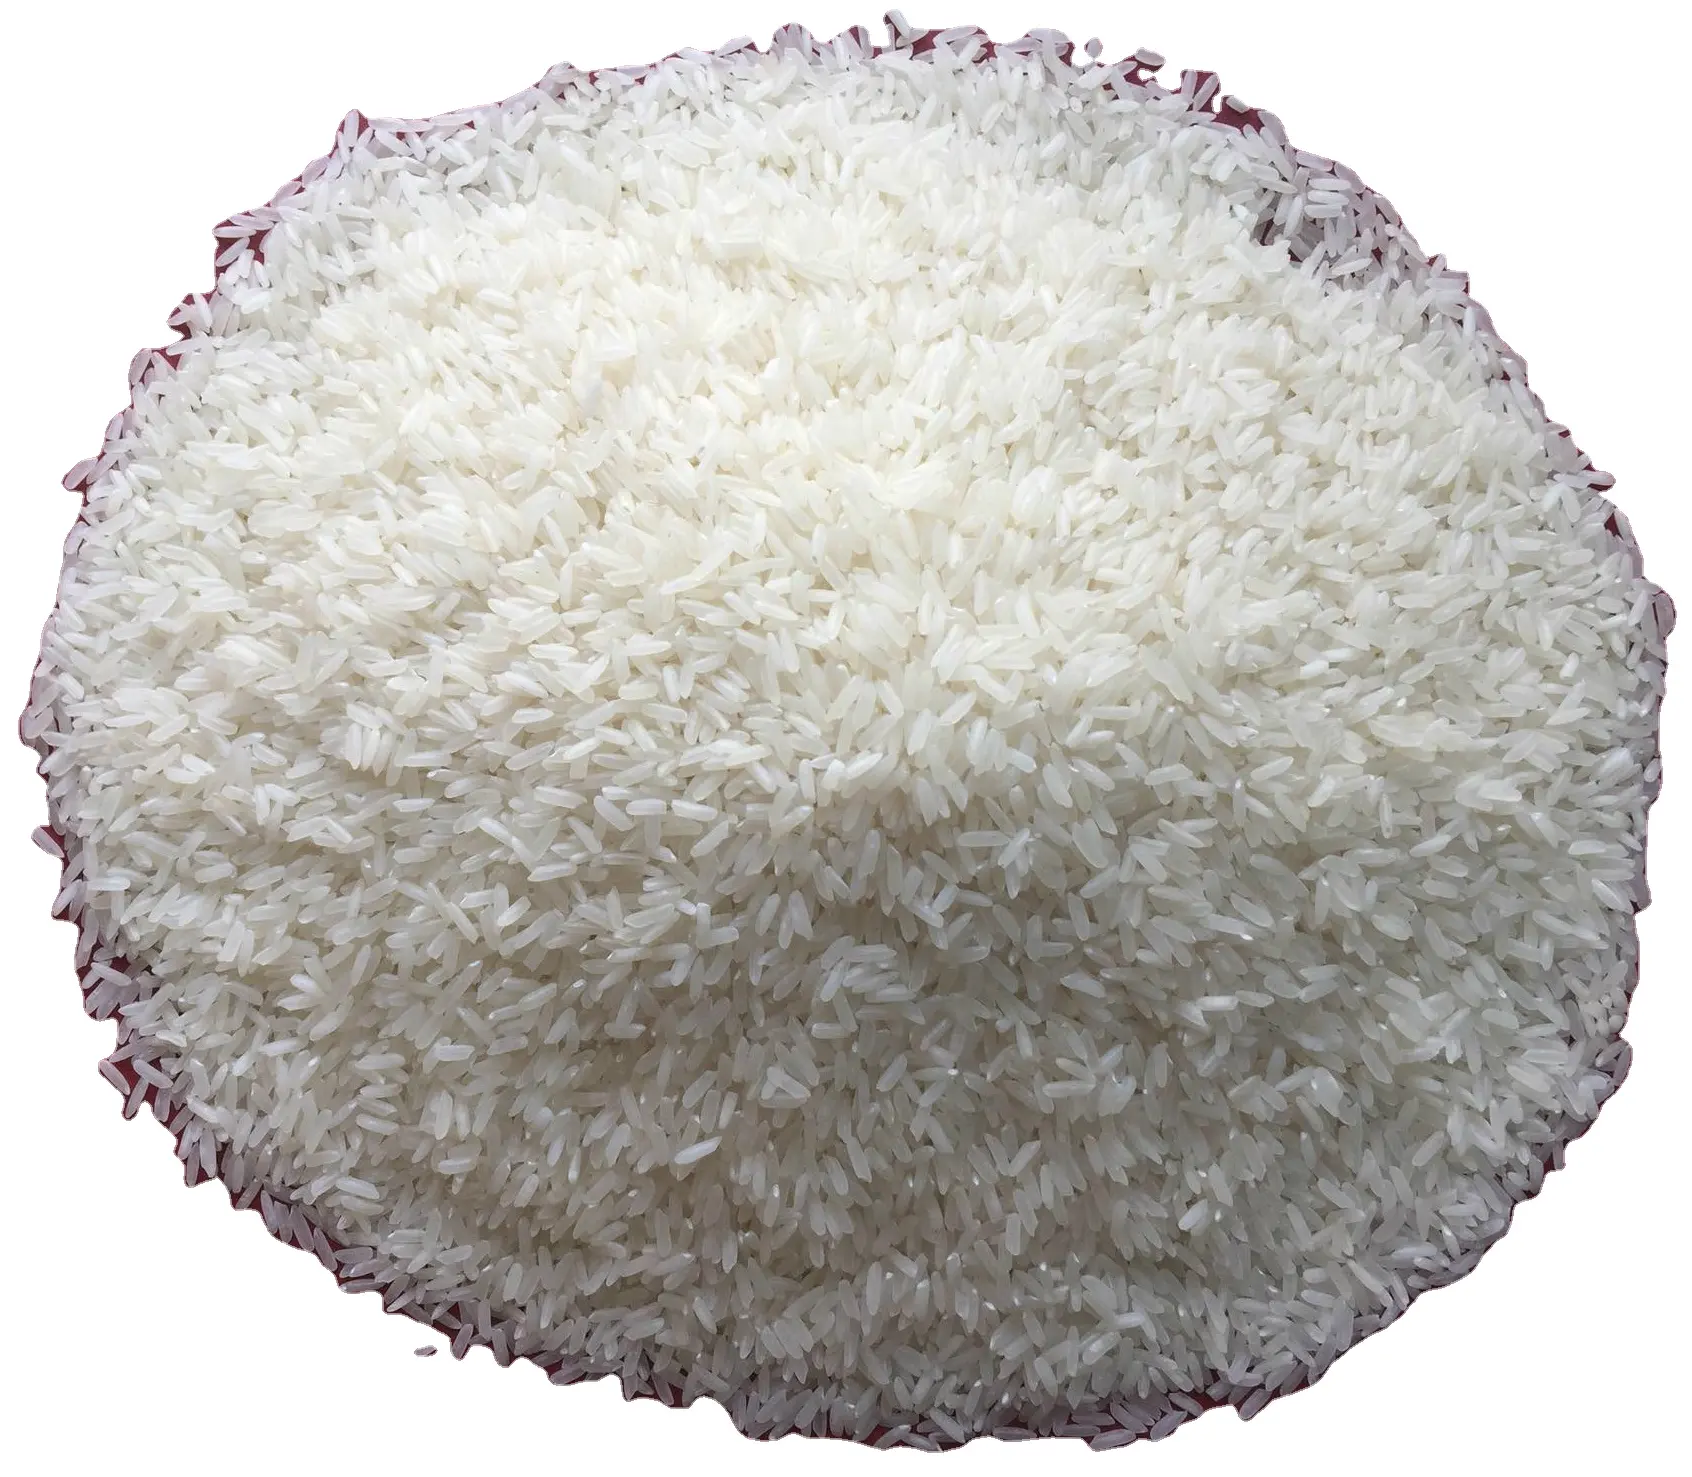 אורז גרגירים ארוכים (5% - 25% - 100%) סיטונאי שבור באיכות הטובה ביותר תוצרת וייטנאם יסמין ריז ארוז וואטסאפ 0084 989 322 607